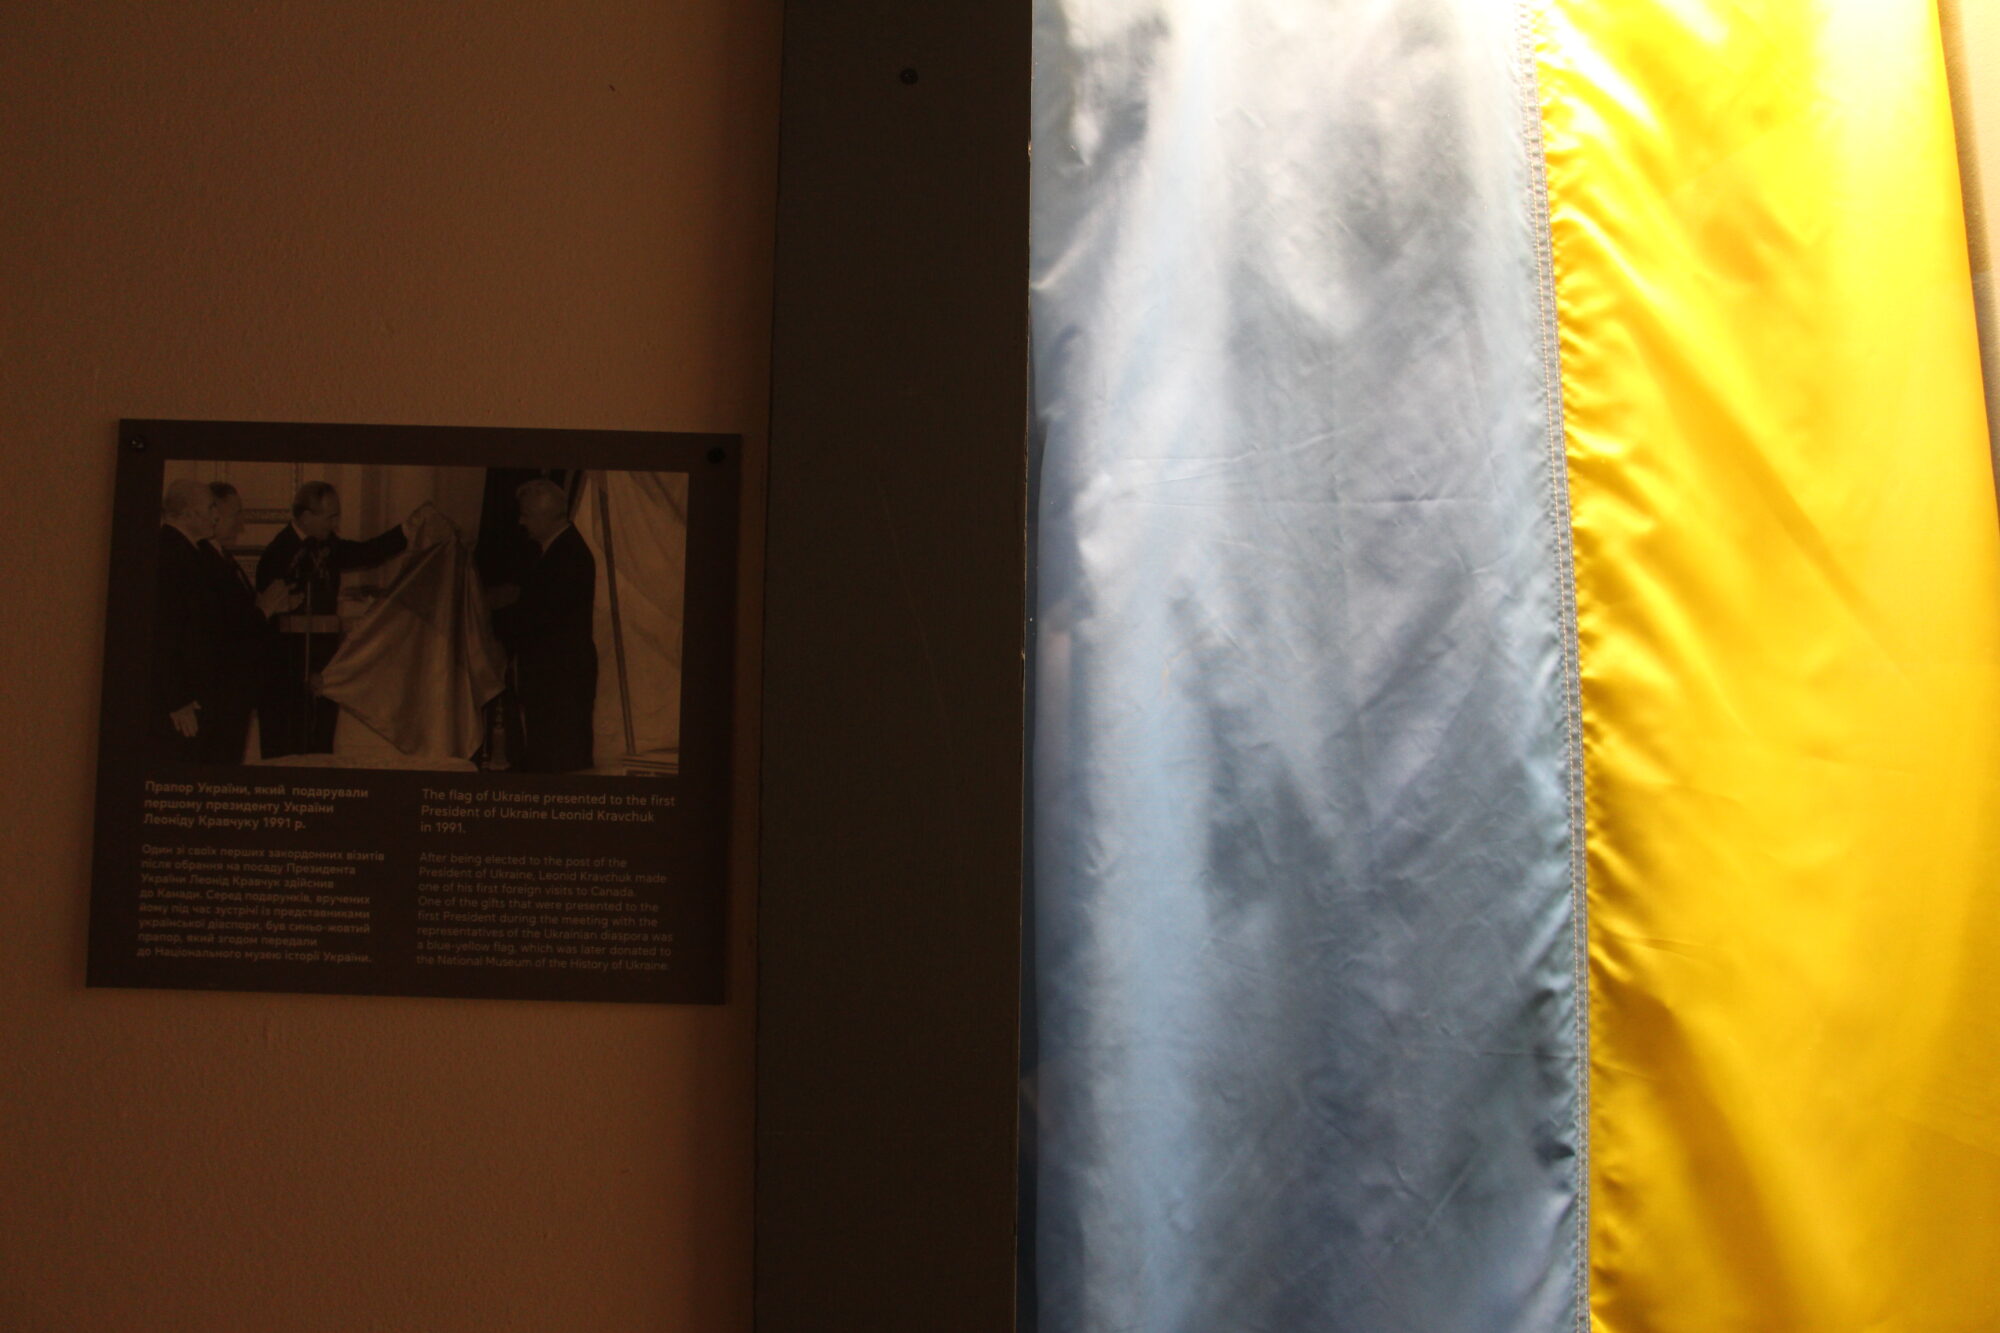 “Прапори Незалежності”: фотодобірка державних стягів, які назавжди залишаться частиною української історії 12